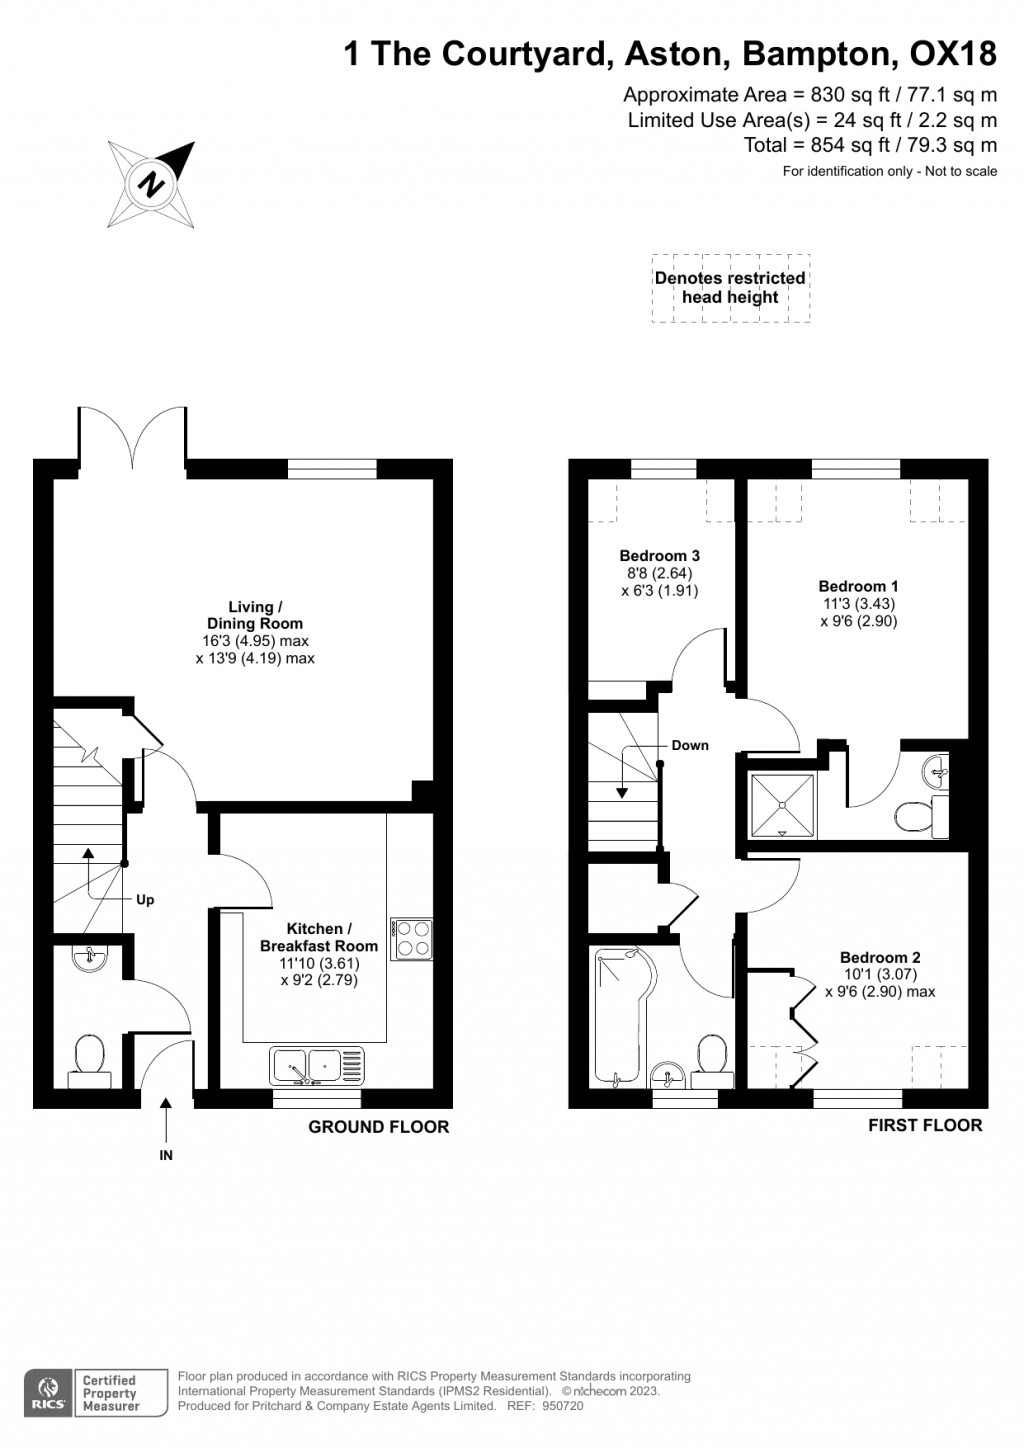 Floorplans For The Courtyard, Aston, Bampton, Oxfordshire